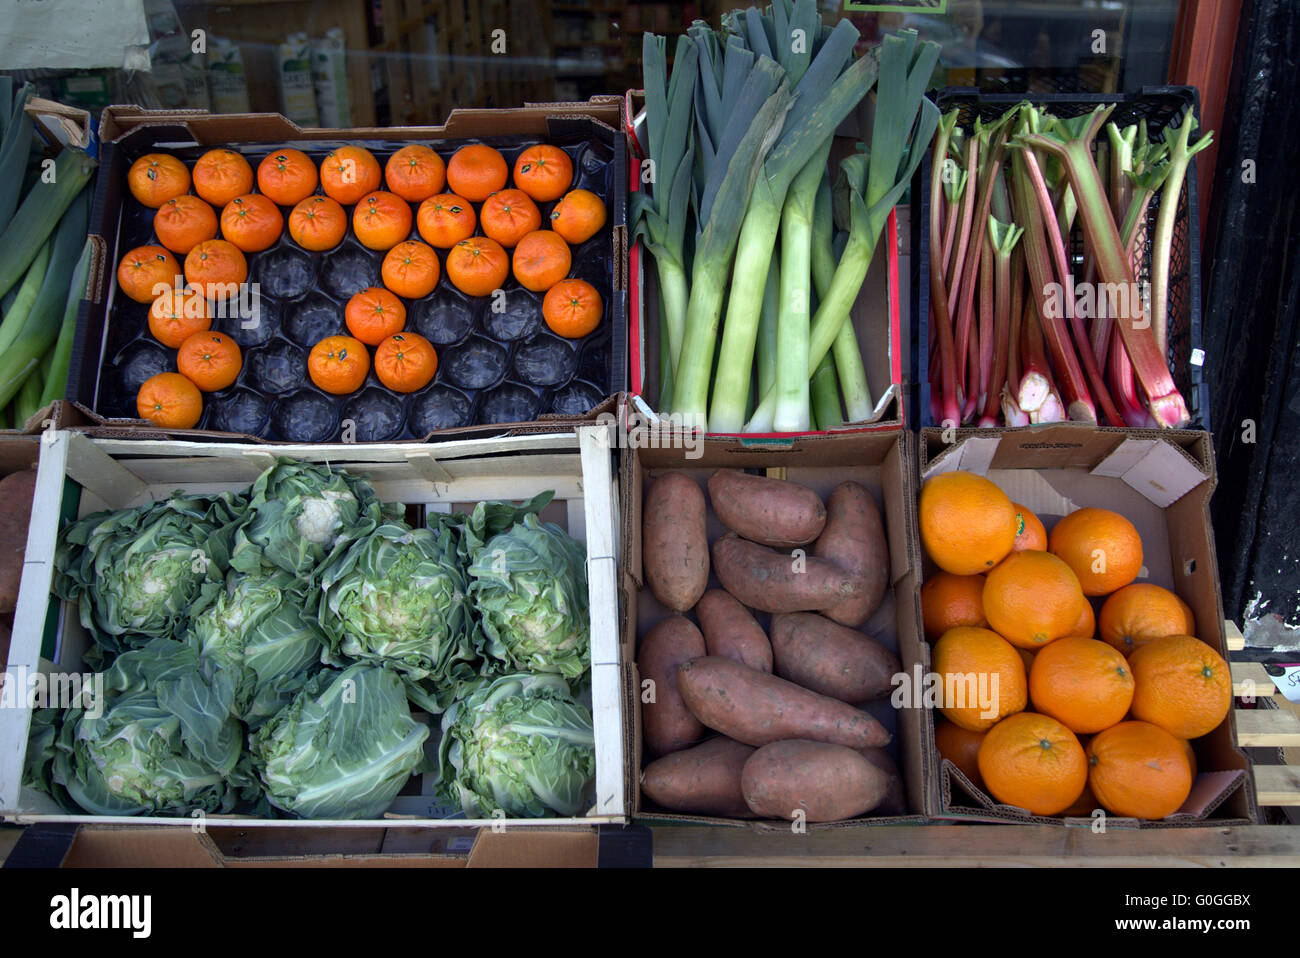 Las frutas y hortalizas y presentados en caja estilo Shop Front Foto de stock